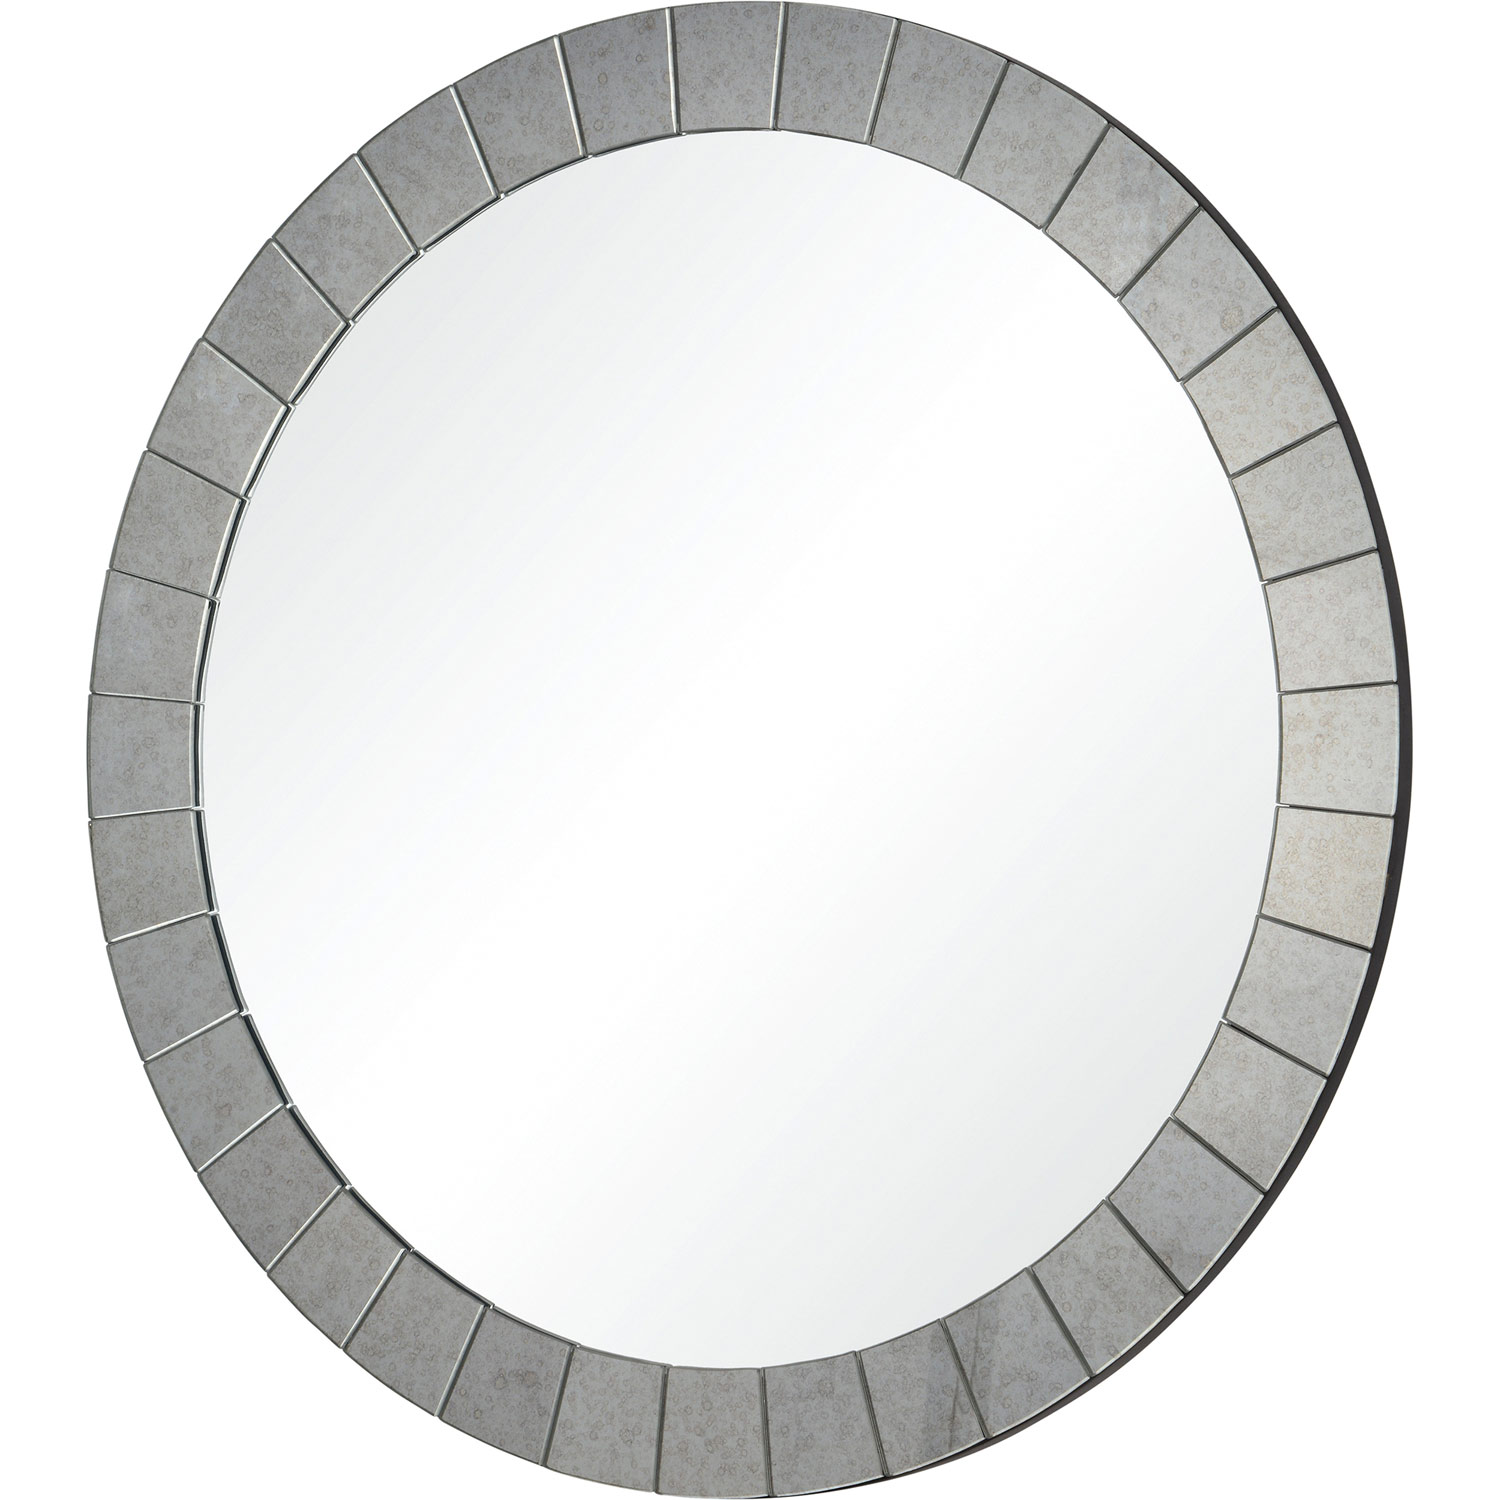 Ren-Wil Sammy Round Mirror - Antique Mirror